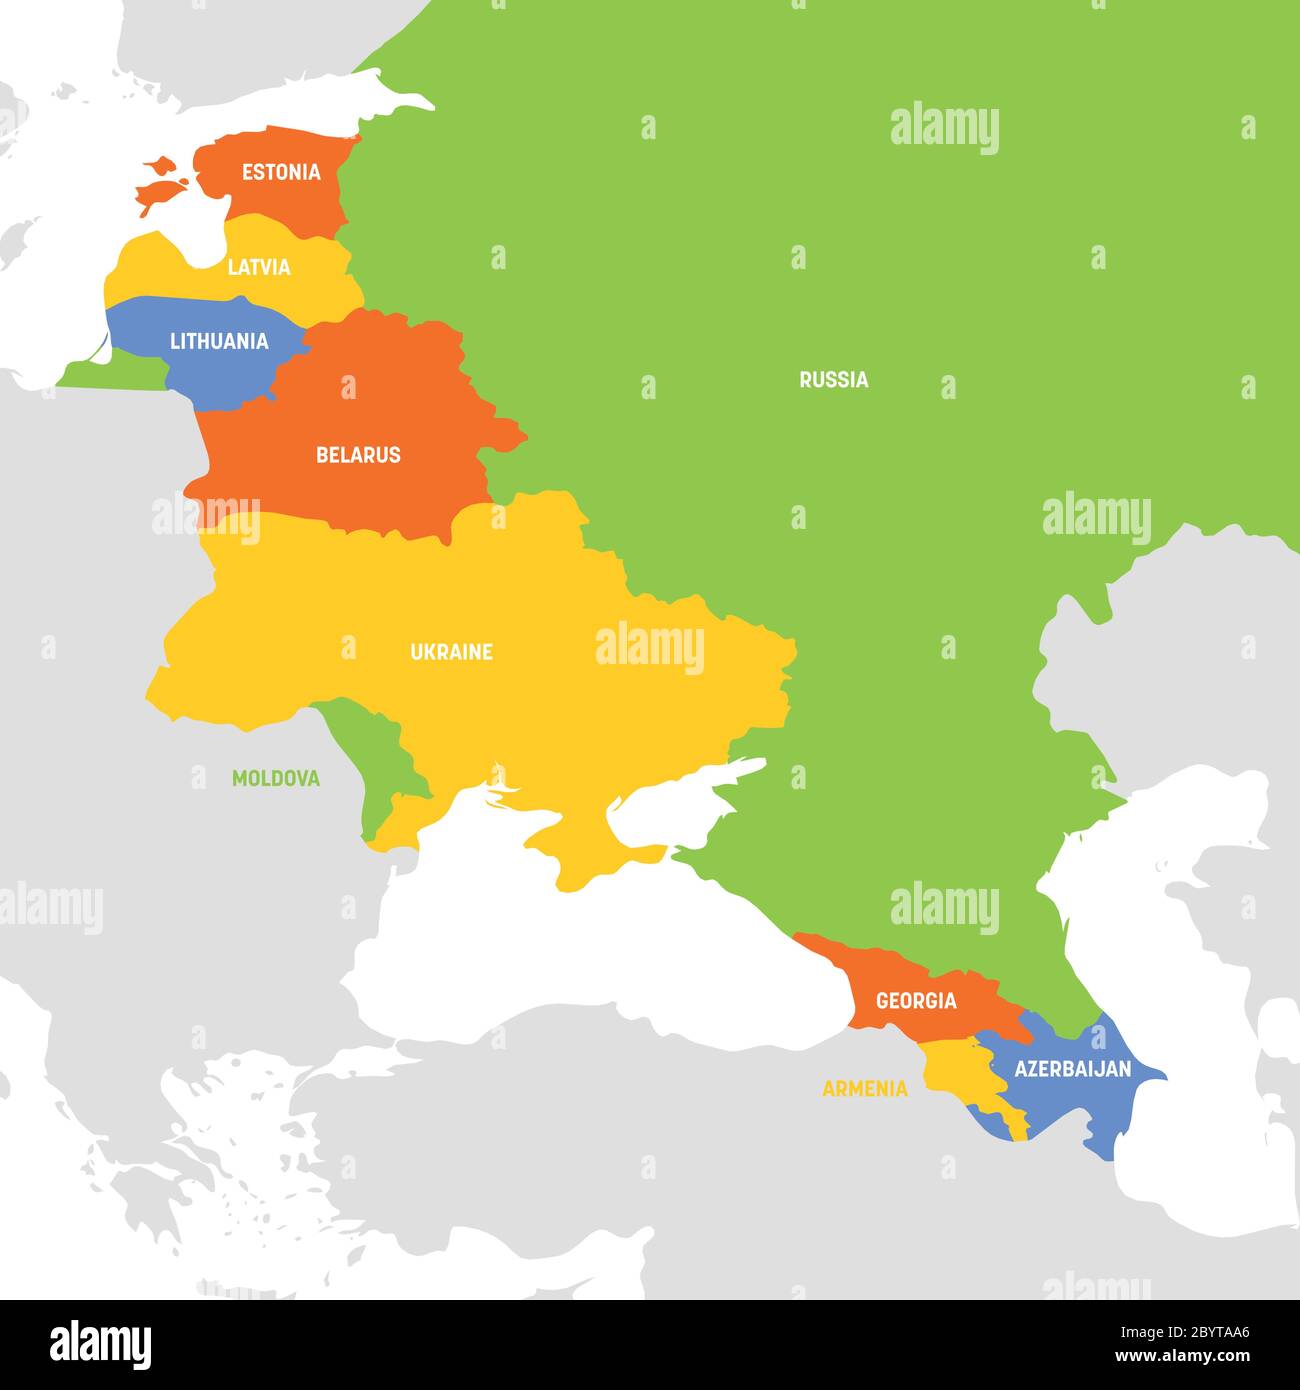 Région Europe de l'est. Carte des pays d'Europe orientale. Pays  post-soviétique et caucasiens. Illustration vectorielle Image Vectorielle  Stock - Alamy